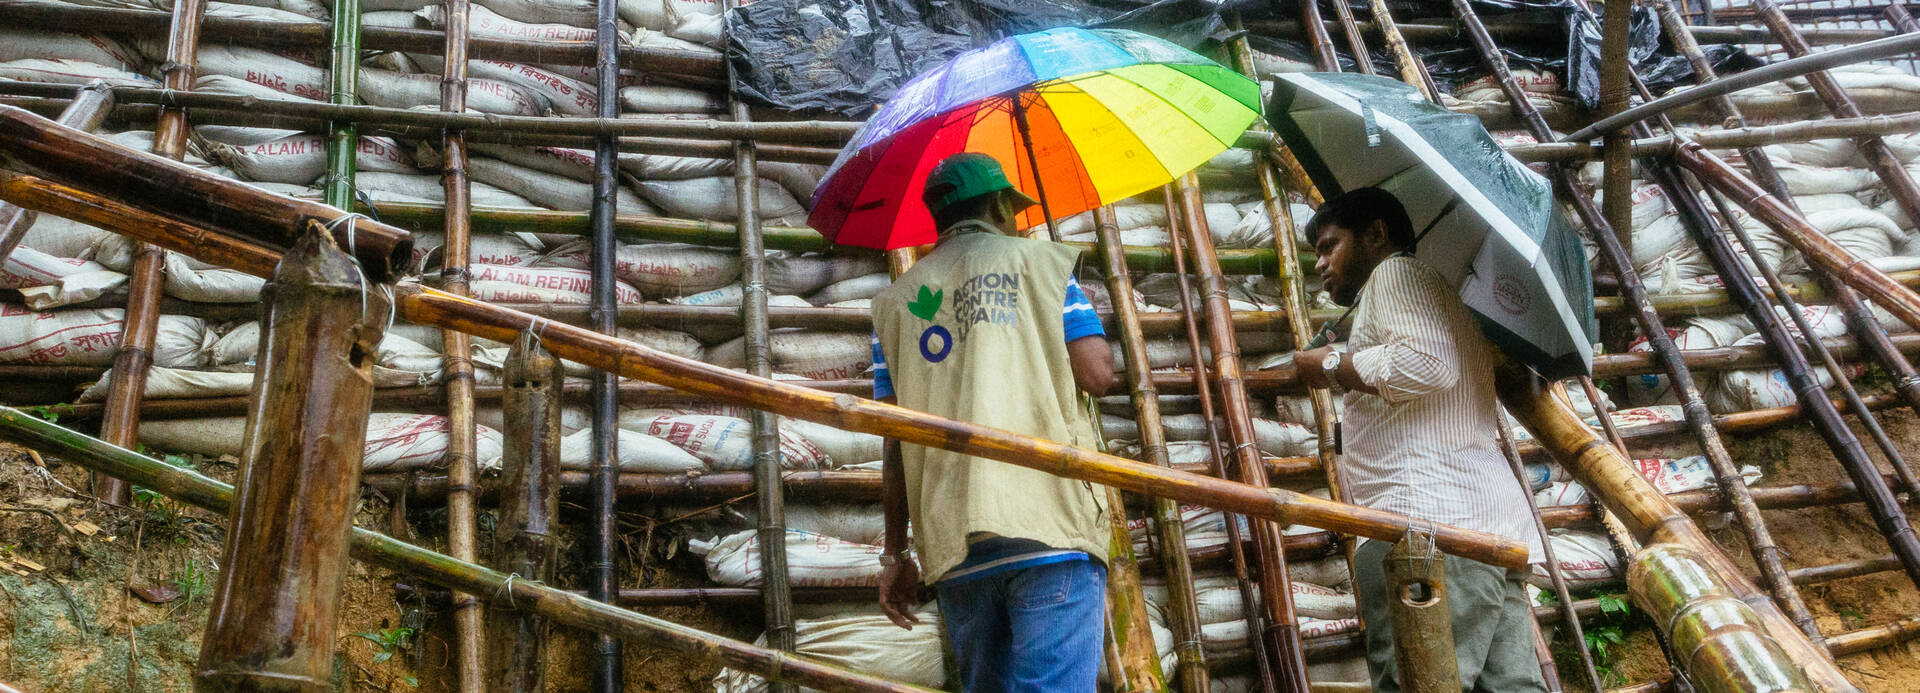 Mitarbeiter von Aktion gegen den Hunger bei Katastrophenvorsorge in Bangladesch